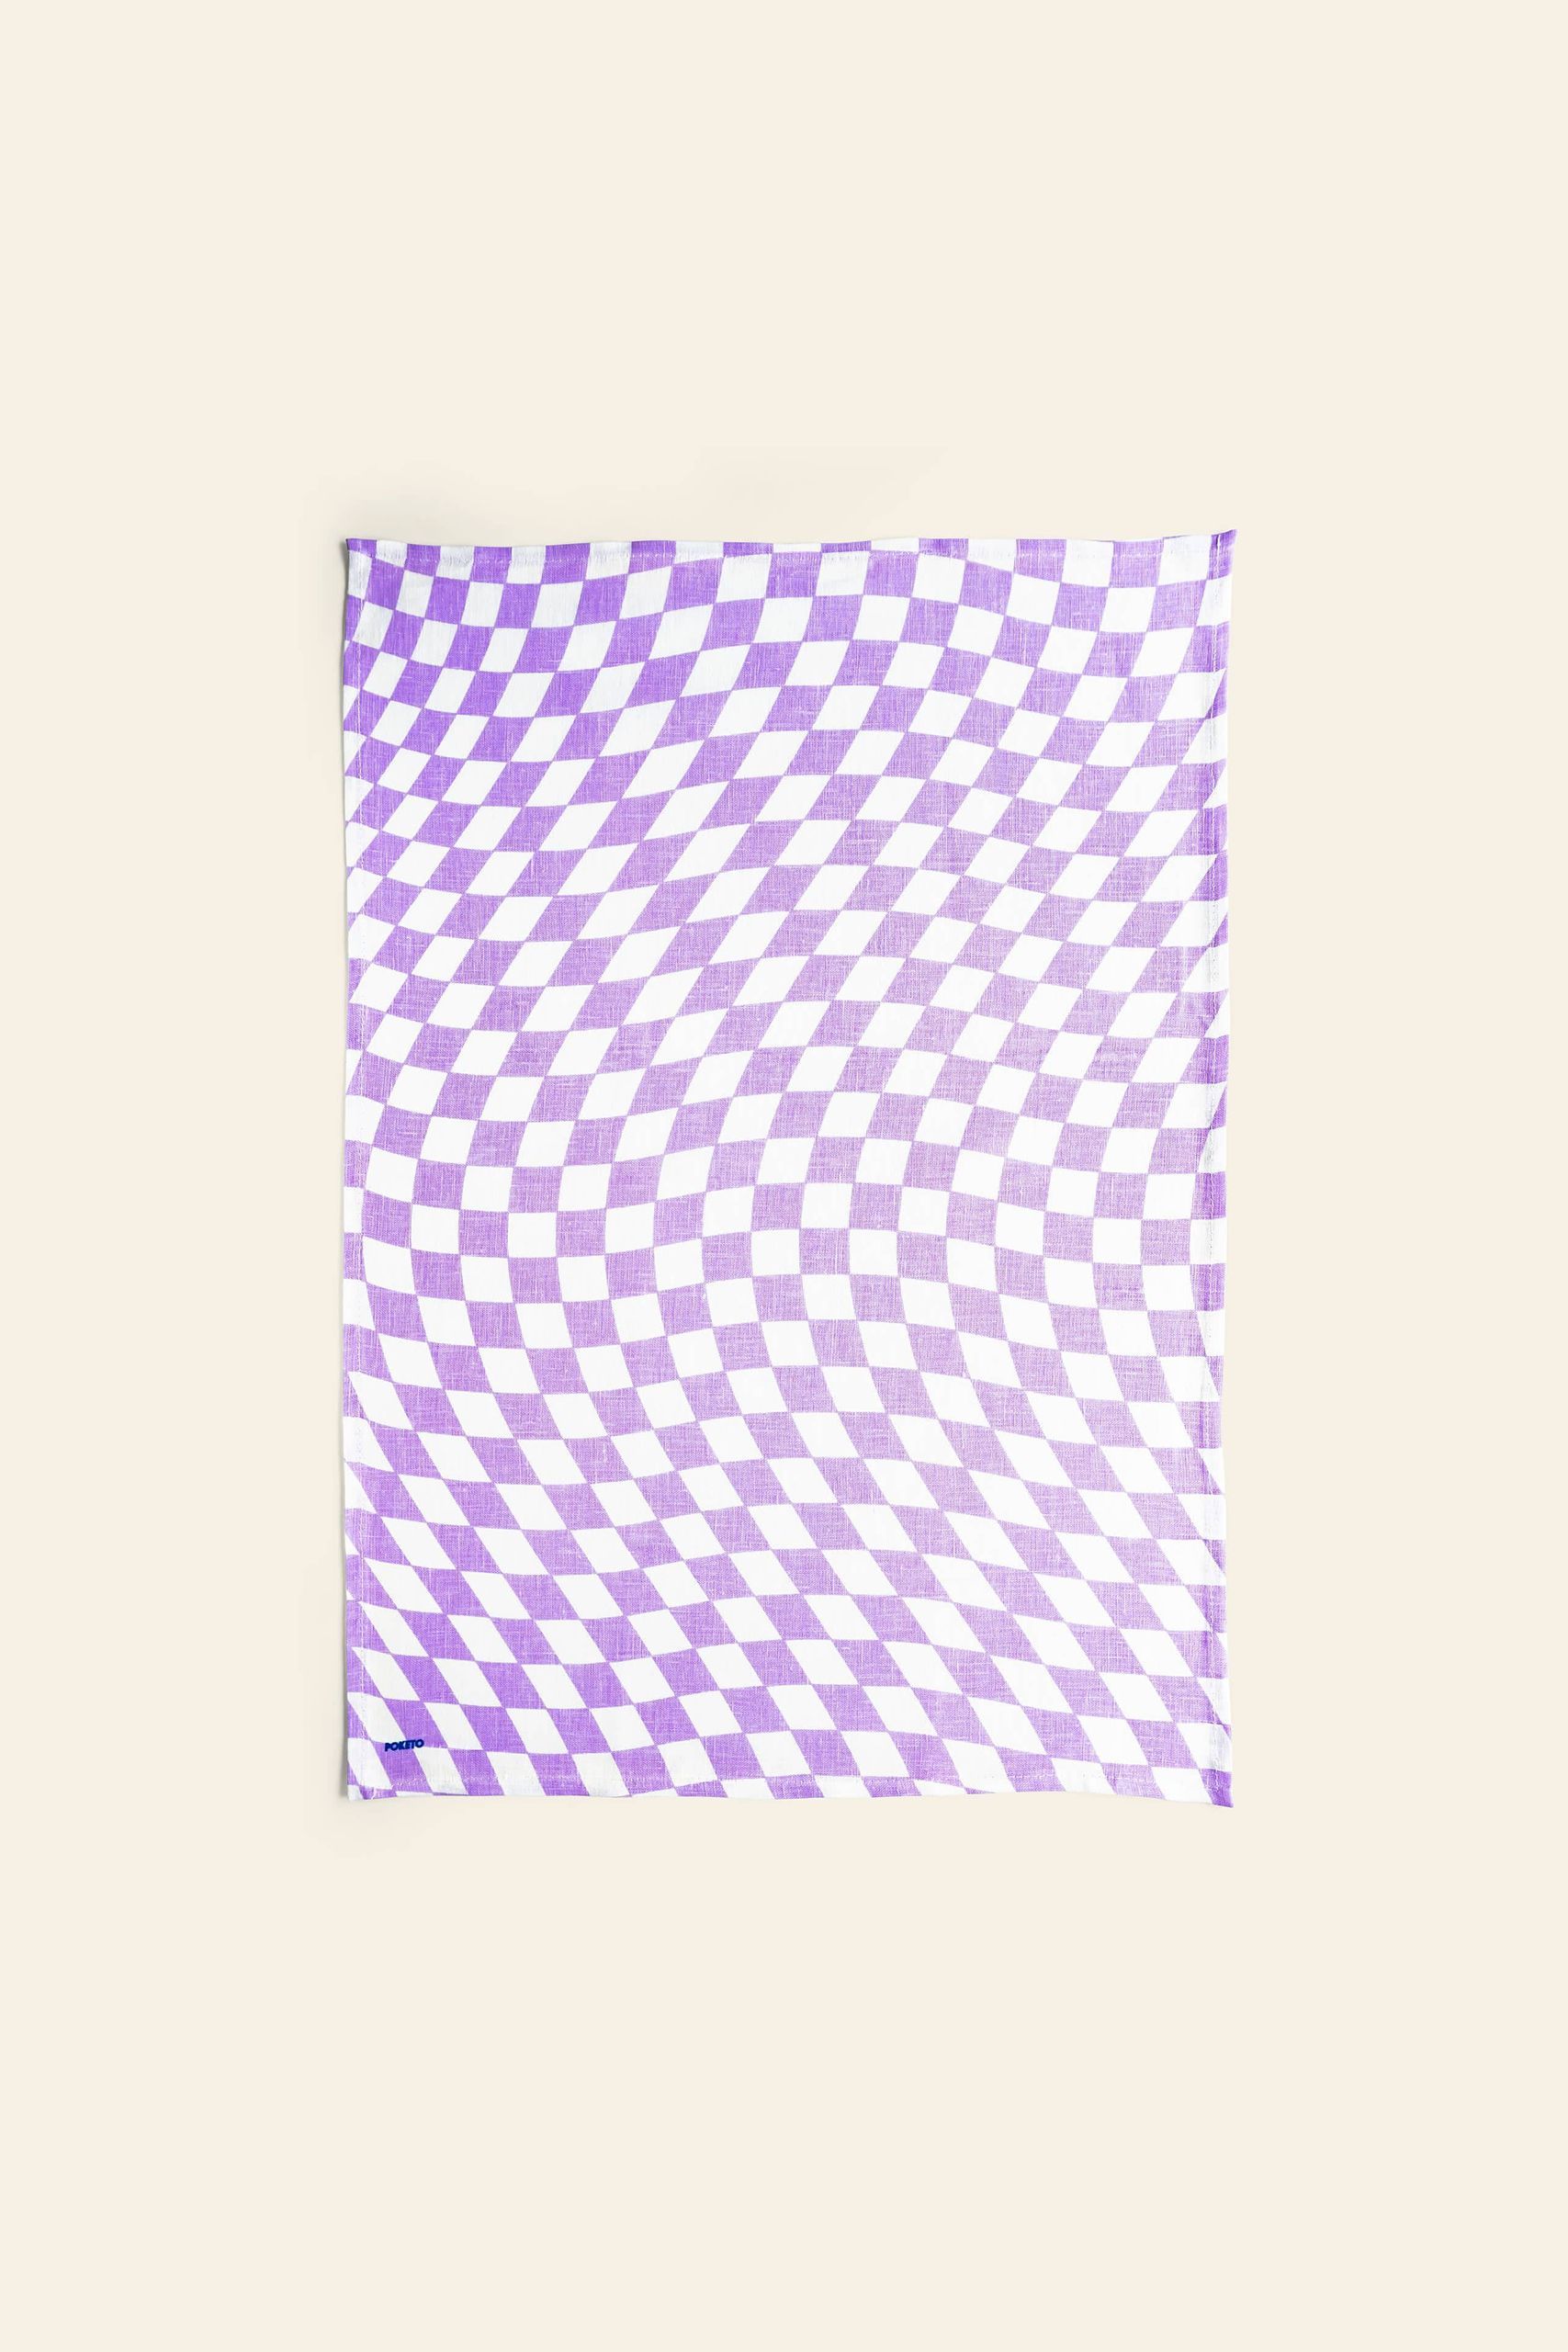 Poketo Linen Tea Towel Set of 2 Checkers 1